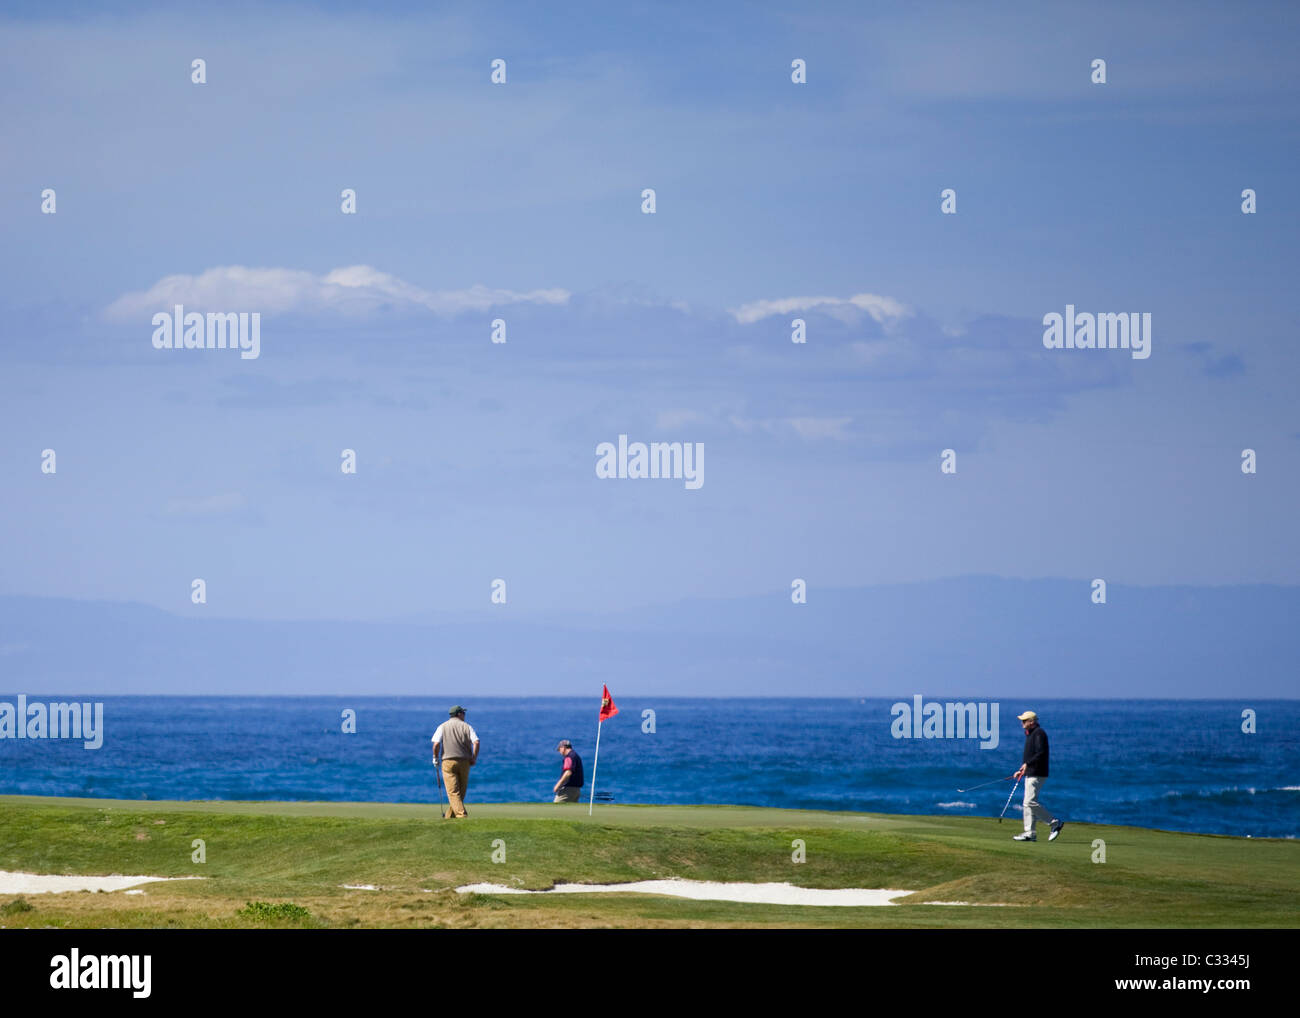 Los golfistas en el putting green en el famoso campo de golf Pebble Beach Oceanfront Foto de stock